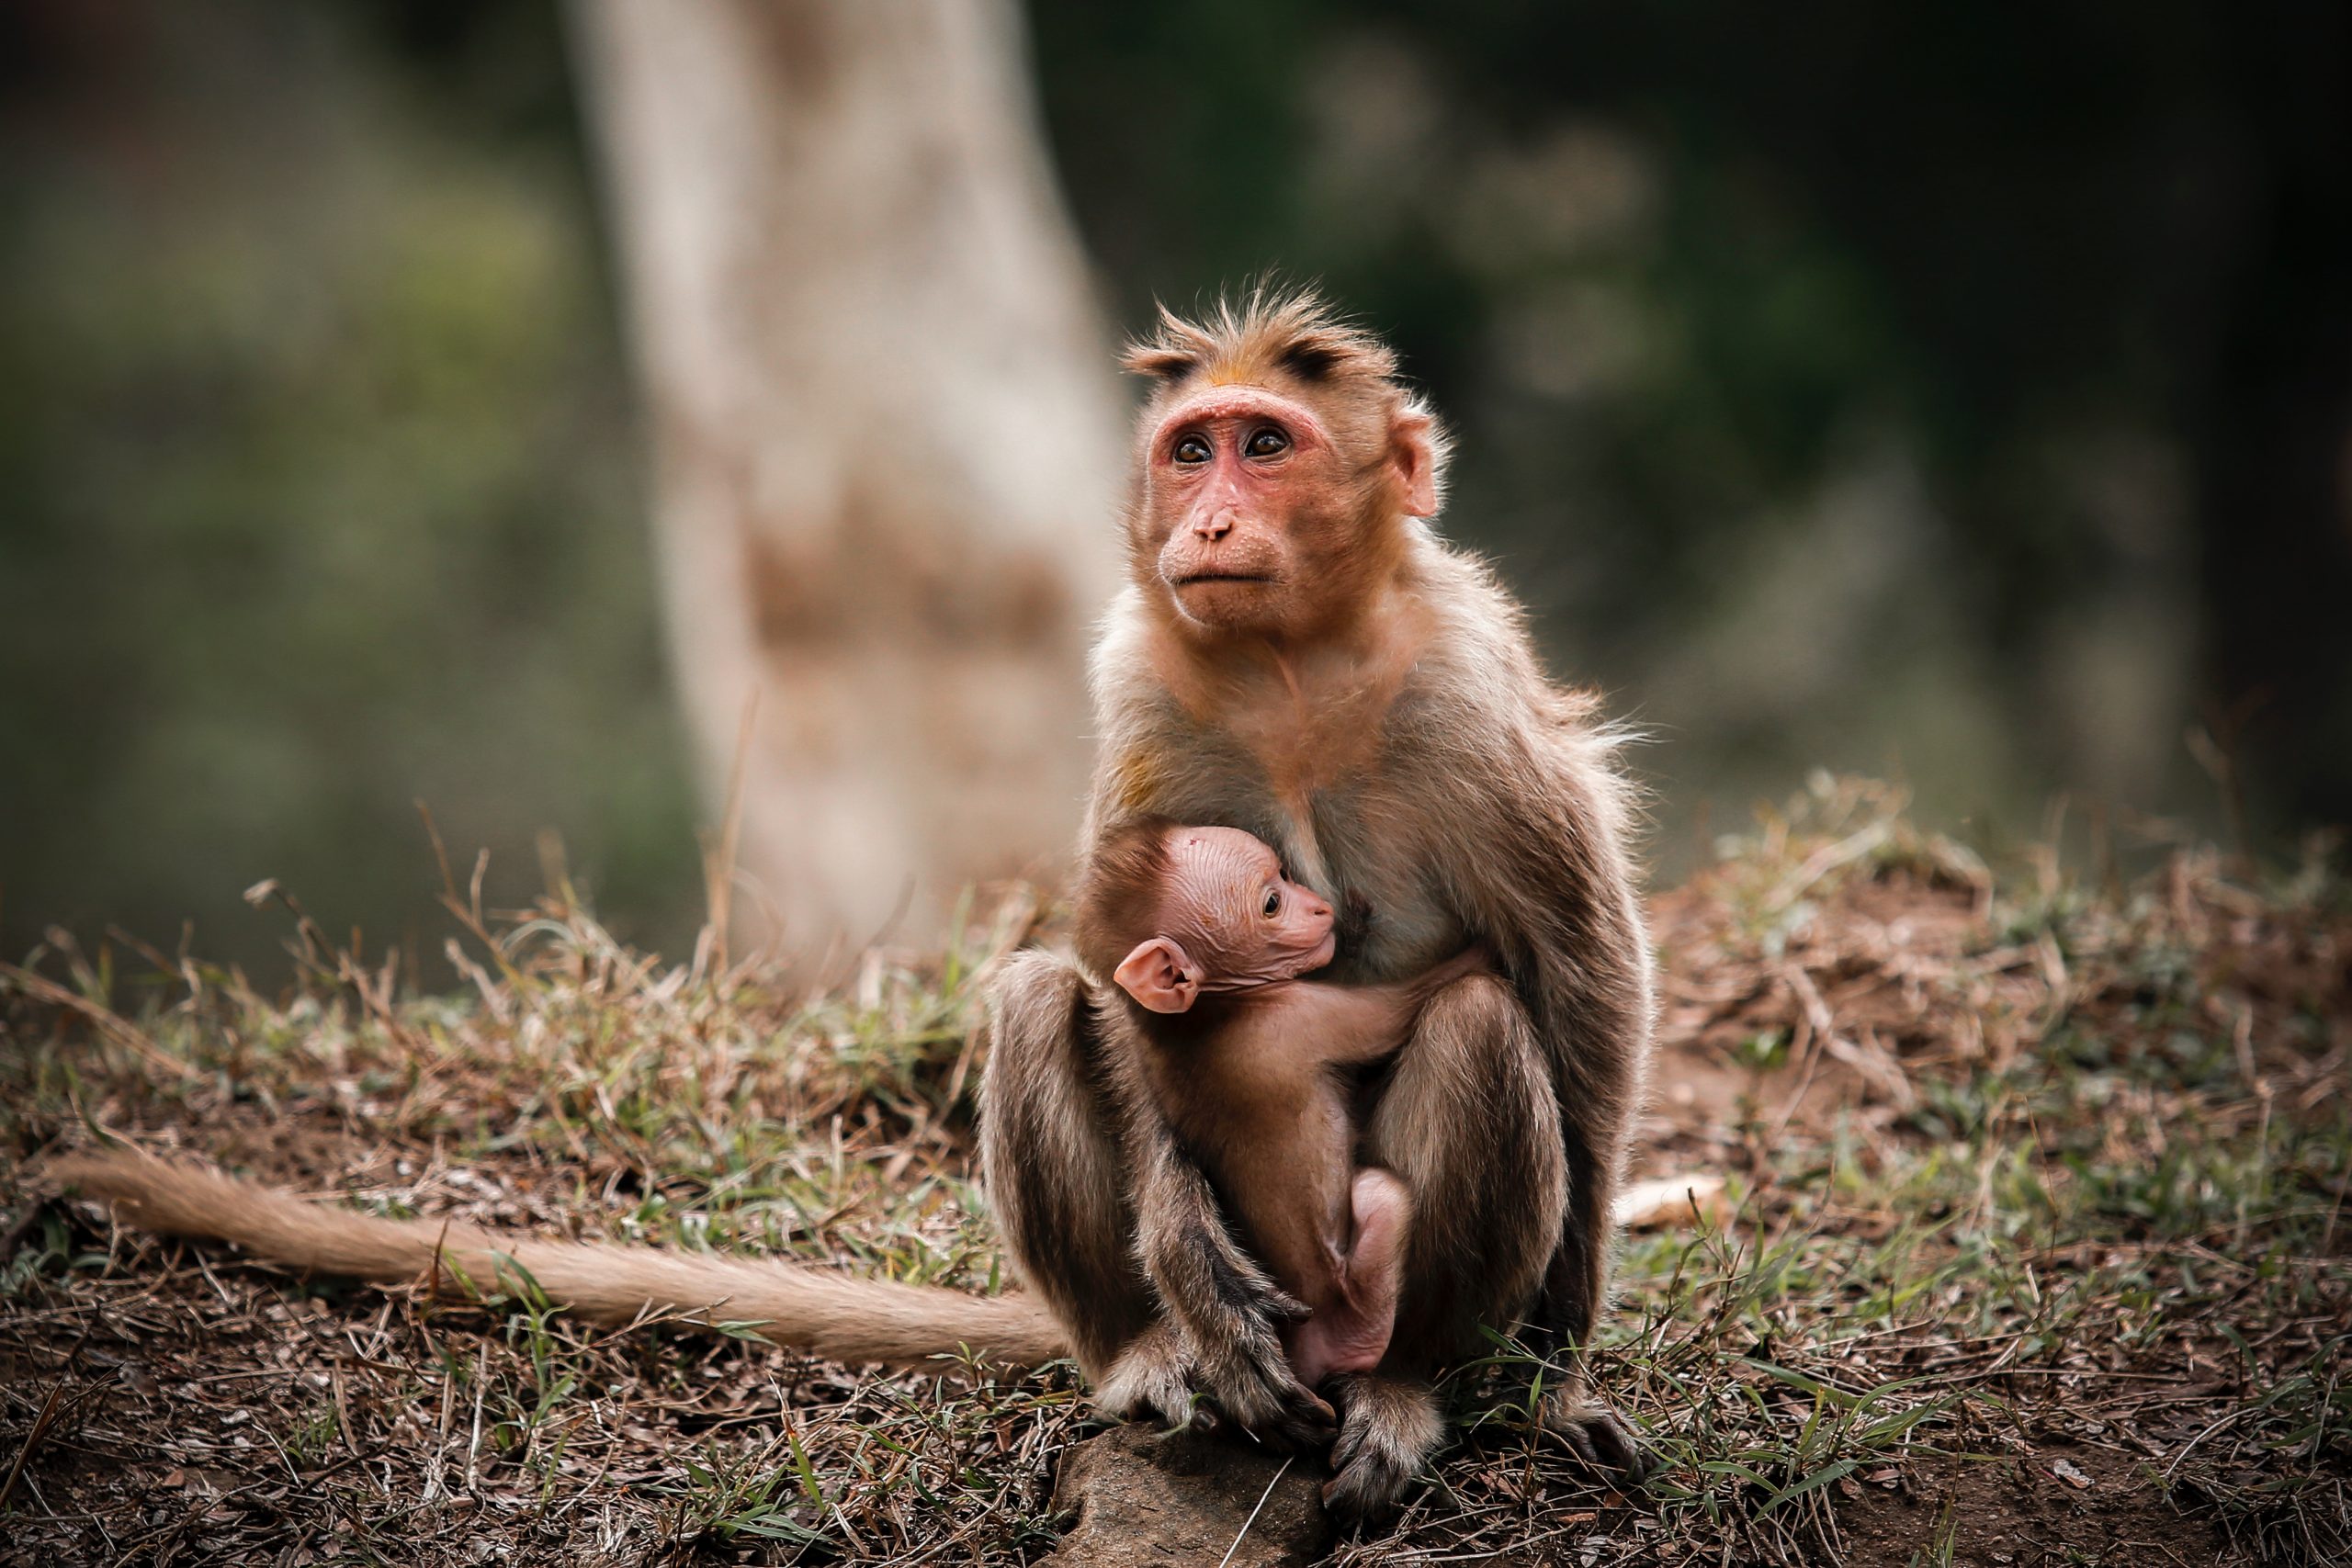 Hình ảnh khỉ mẹ và khỉ con thật đáng yêu và xúc động. Cùng xem những khoảnh khắc này để thấy được tình mẫu tử đong đầy cảm xúc giữa mẹ và con khỉ. Chắc chắn bạn sẽ cảm nhận được tình yêu và sự bao dung tuyệt vời của một người mẹ.